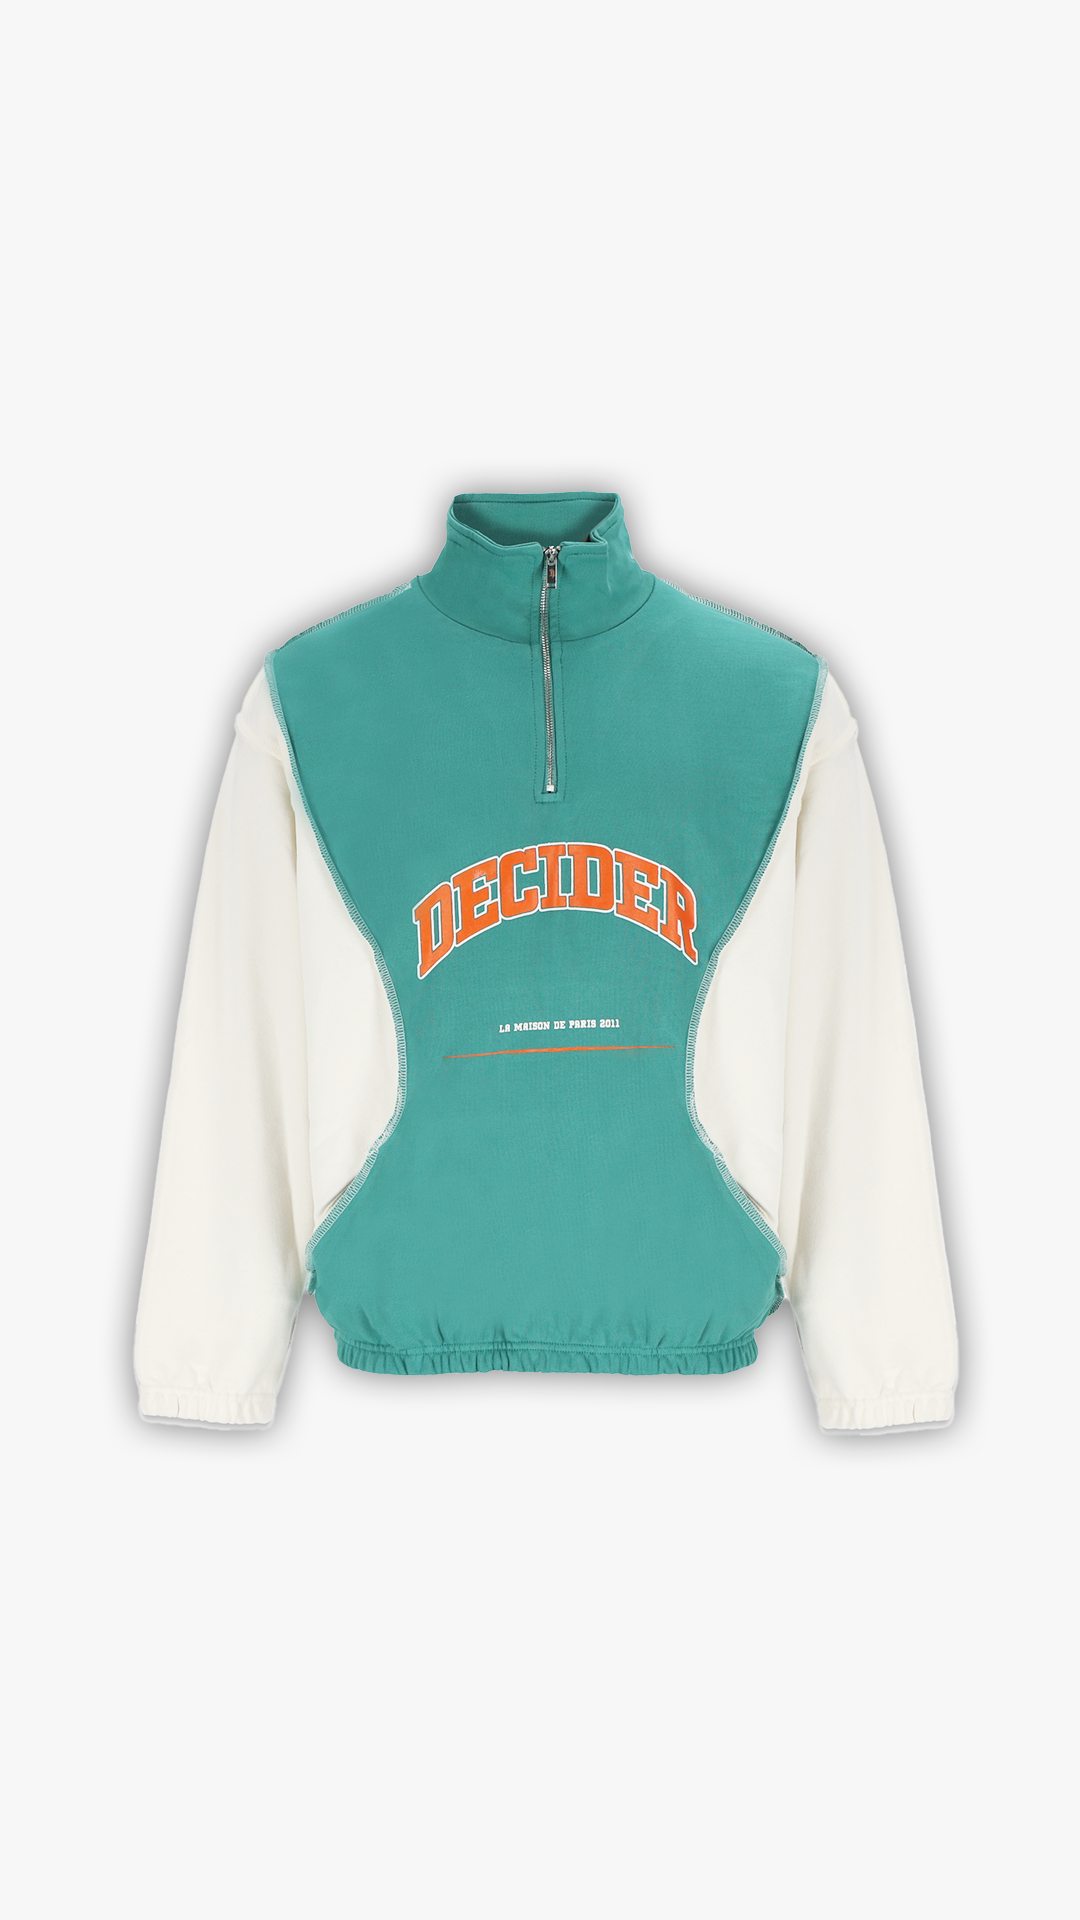 Decider Half Zip Sweatshirt mit hohem Kragen in grün und cremeweißen Ärmeln, orangenes Logo als Frontprint.